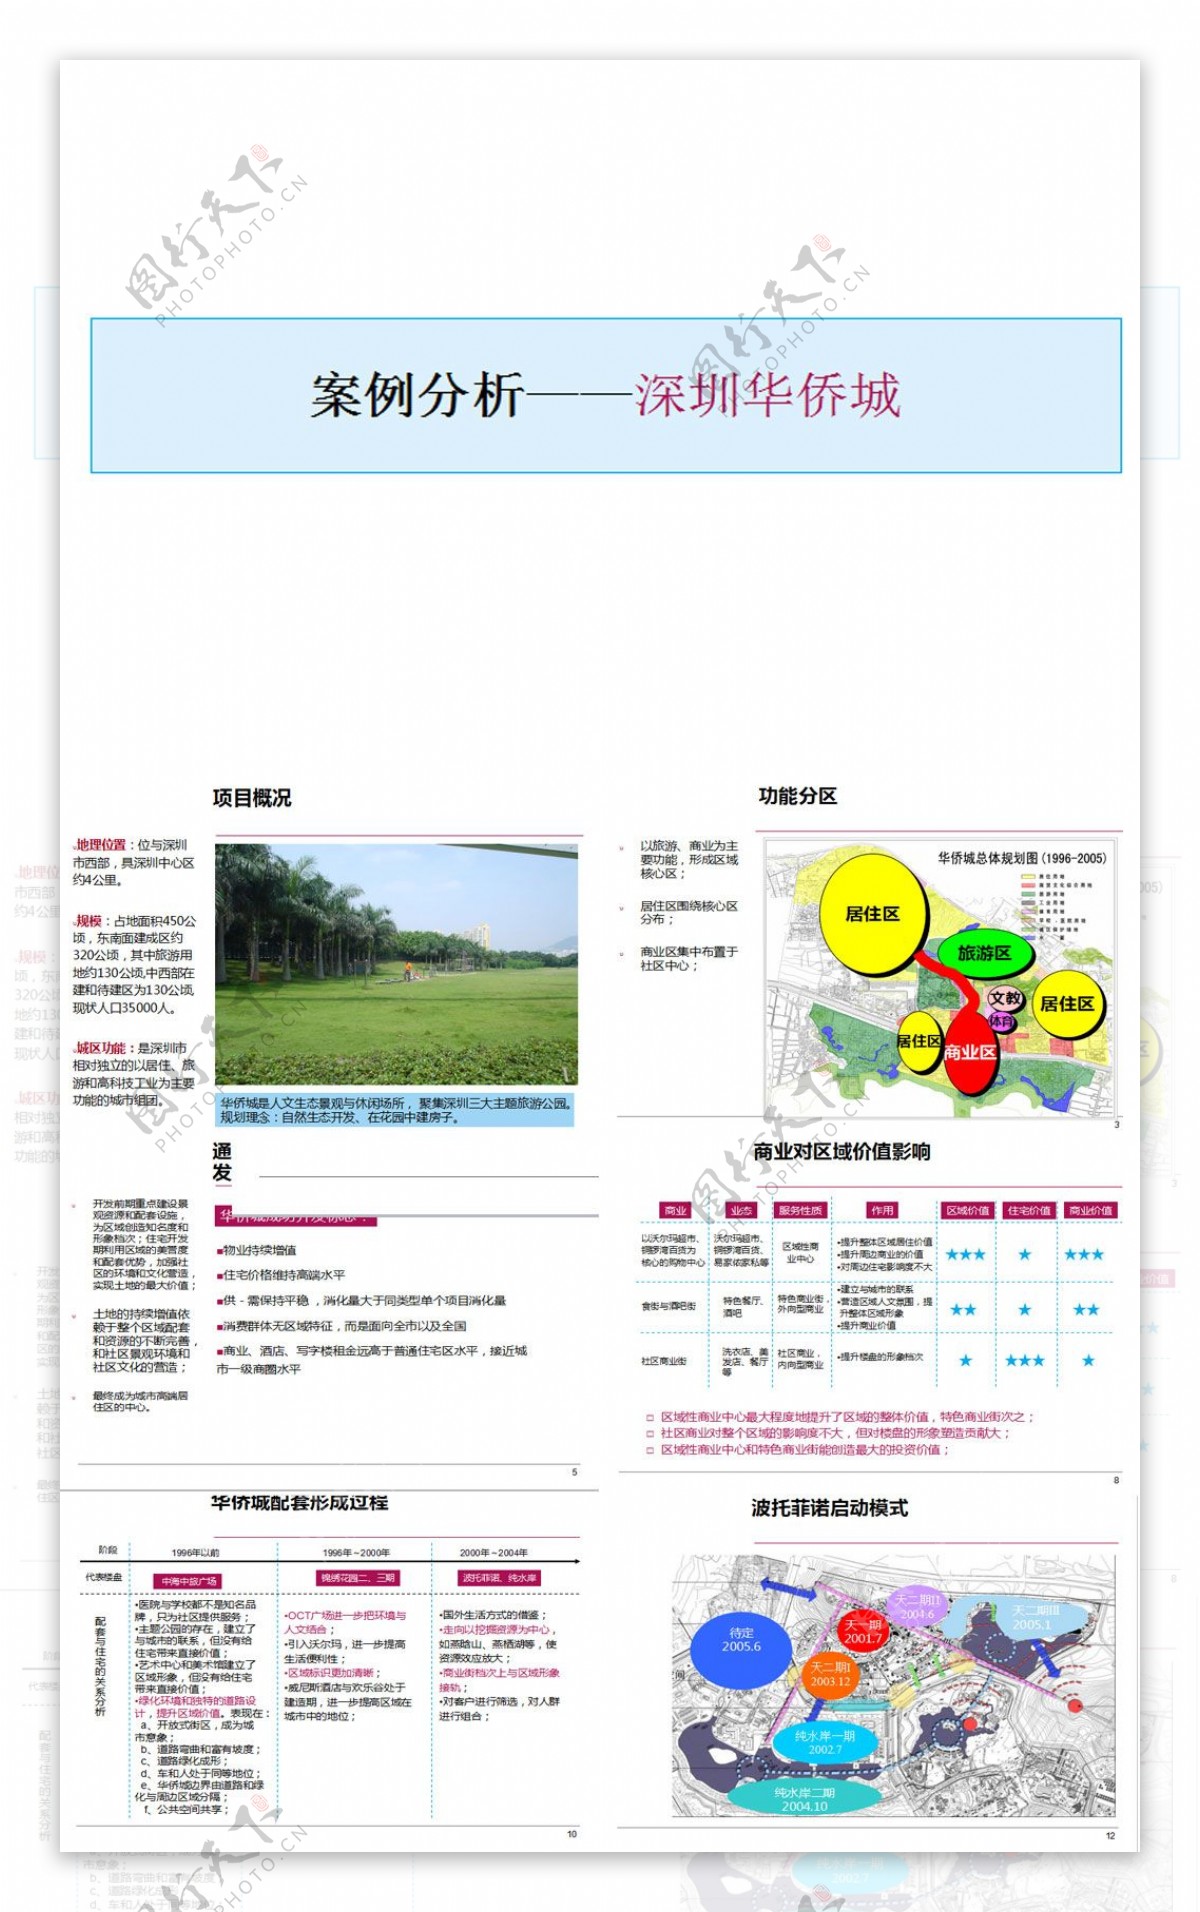 深圳华侨城项目发展案例分析20102.9.8